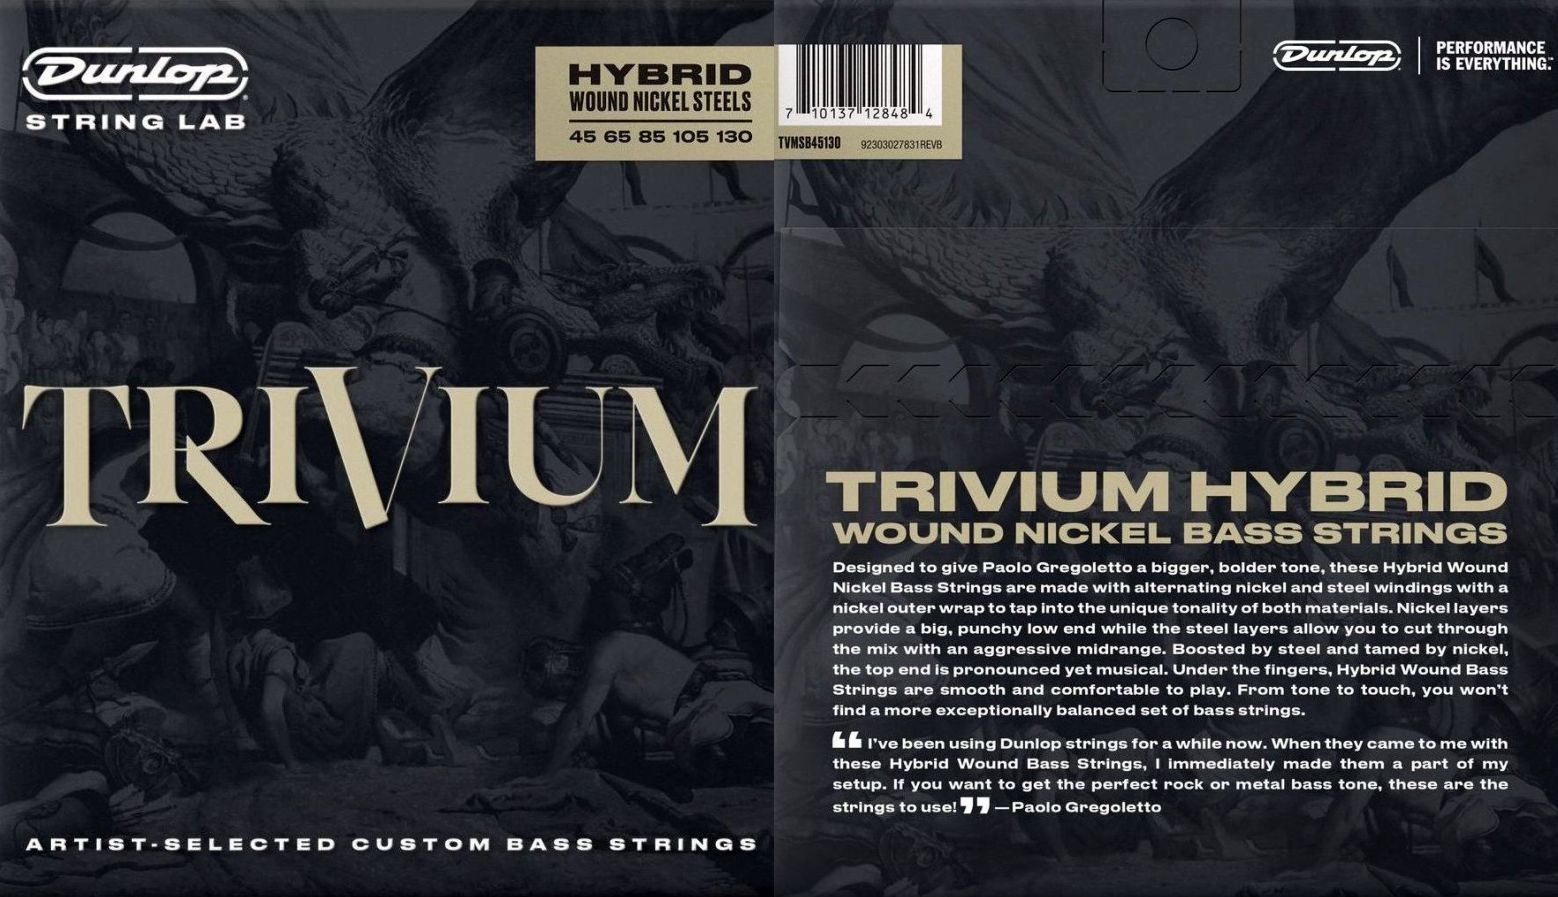 Basové struny Dunlop Trivium Hybrid Wound Nickel